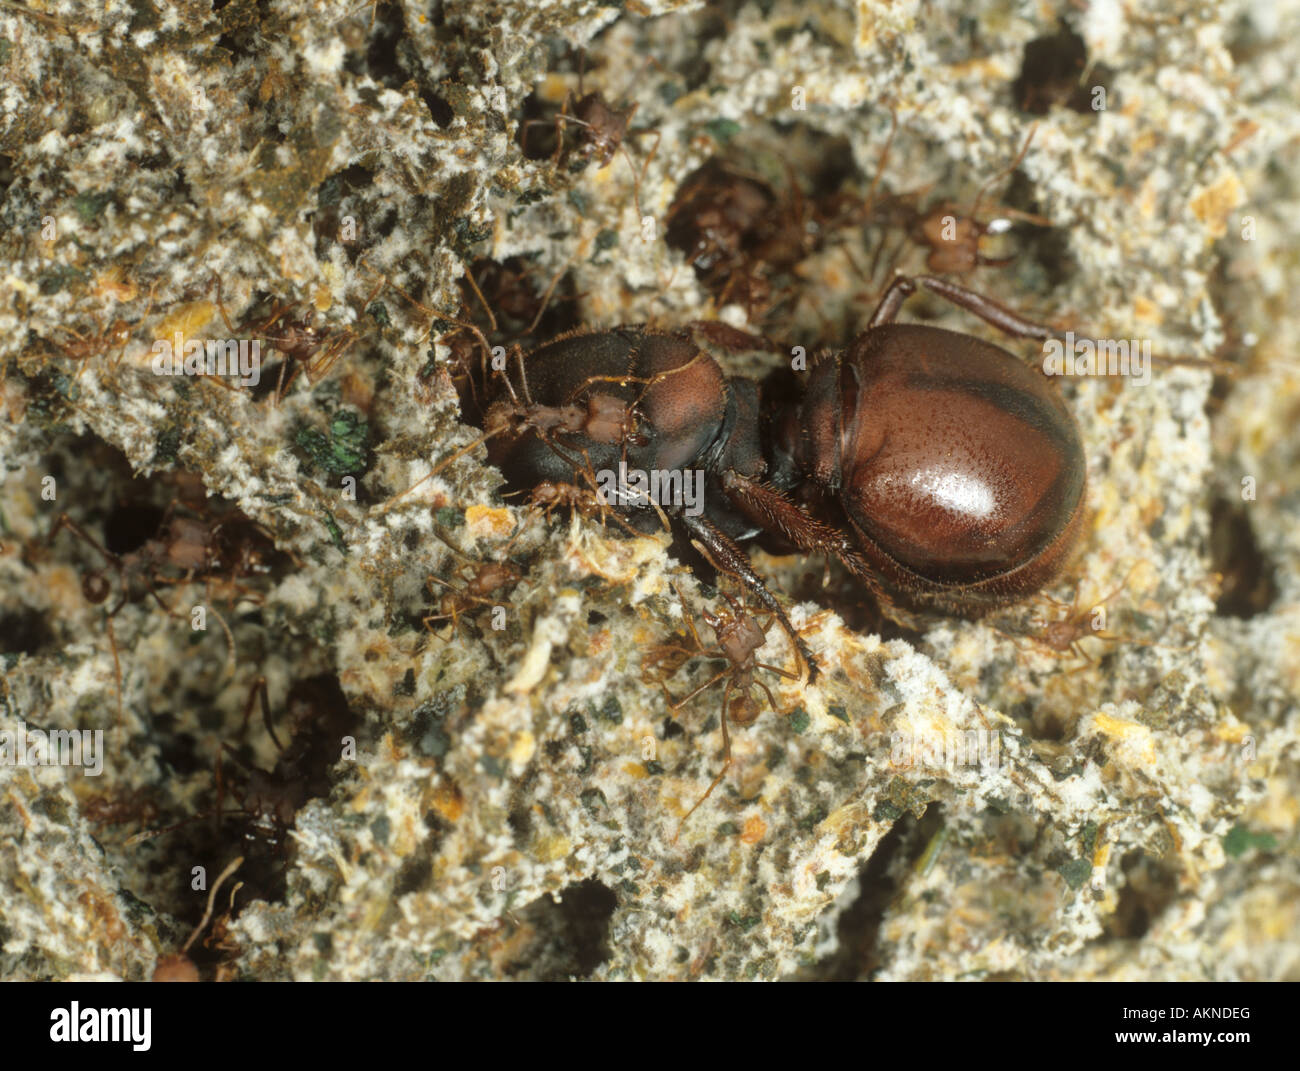 La hormiga cortadora de hojas Atta laevigata reina con trabajadores y soldados en su jardín de hongos Foto de stock